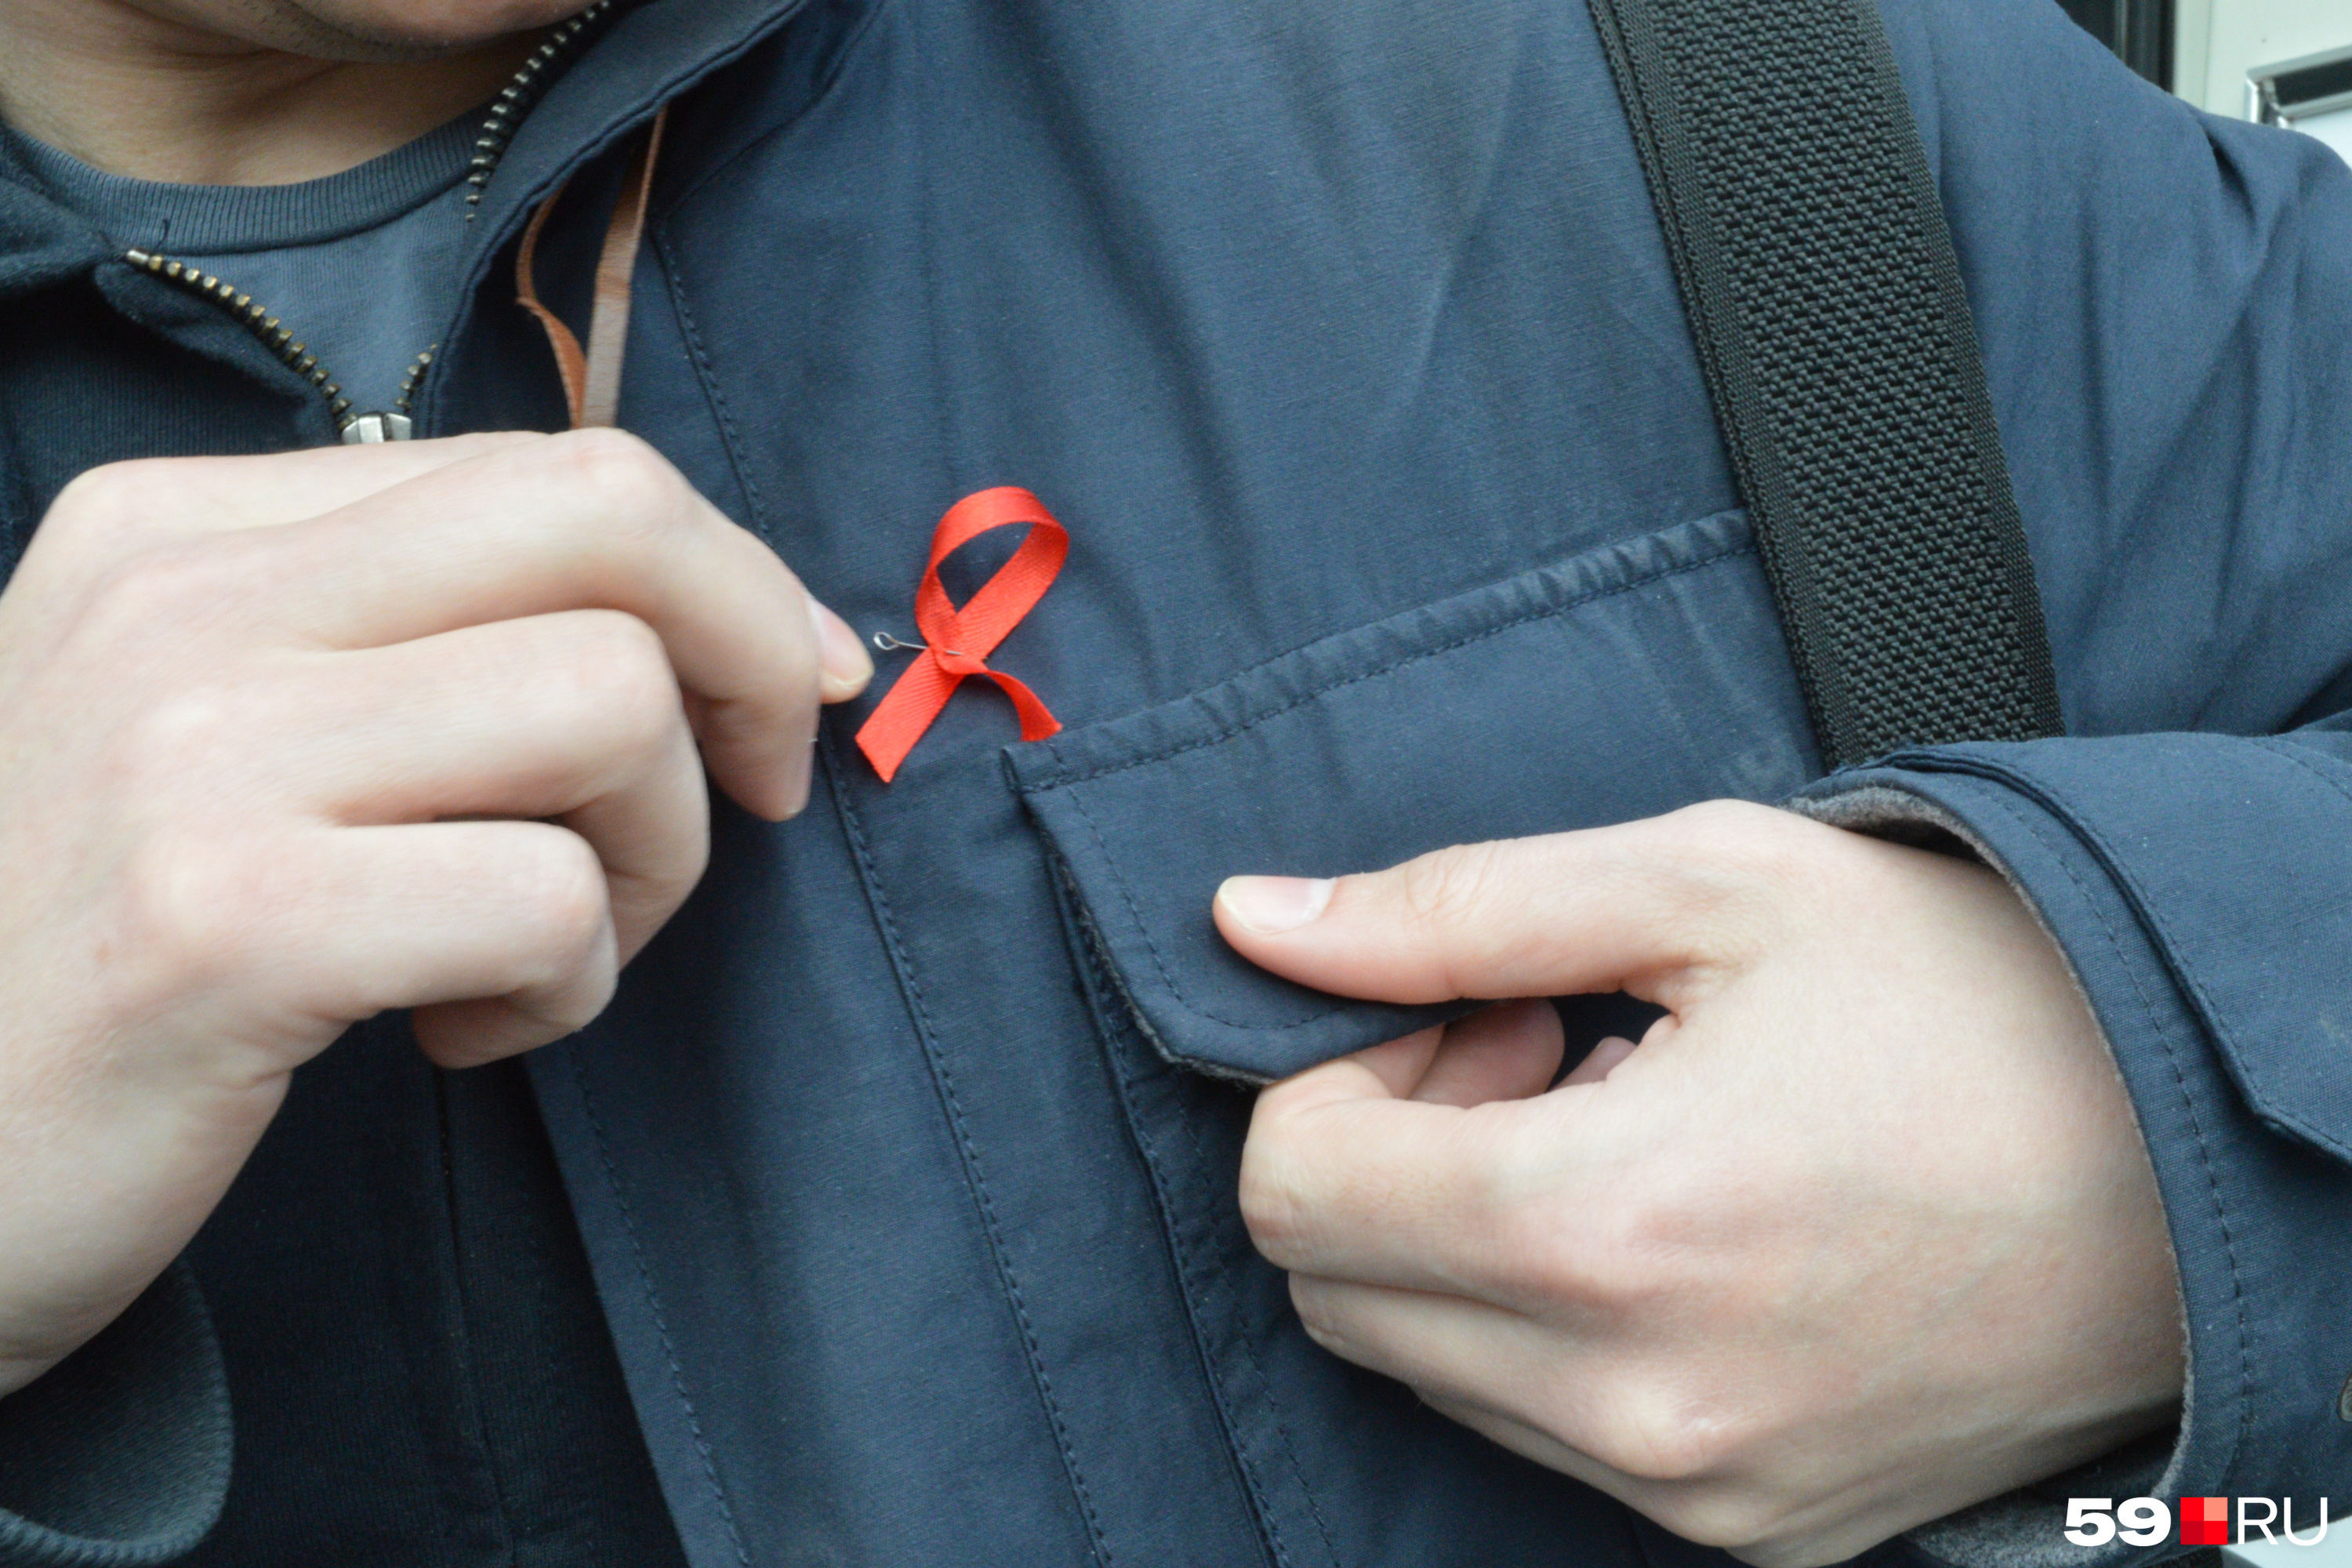 Как избежать заражения ВИЧ? — Как обезопасить себя? — ВИЧ/СПИД: материалы Детского фонда ООН